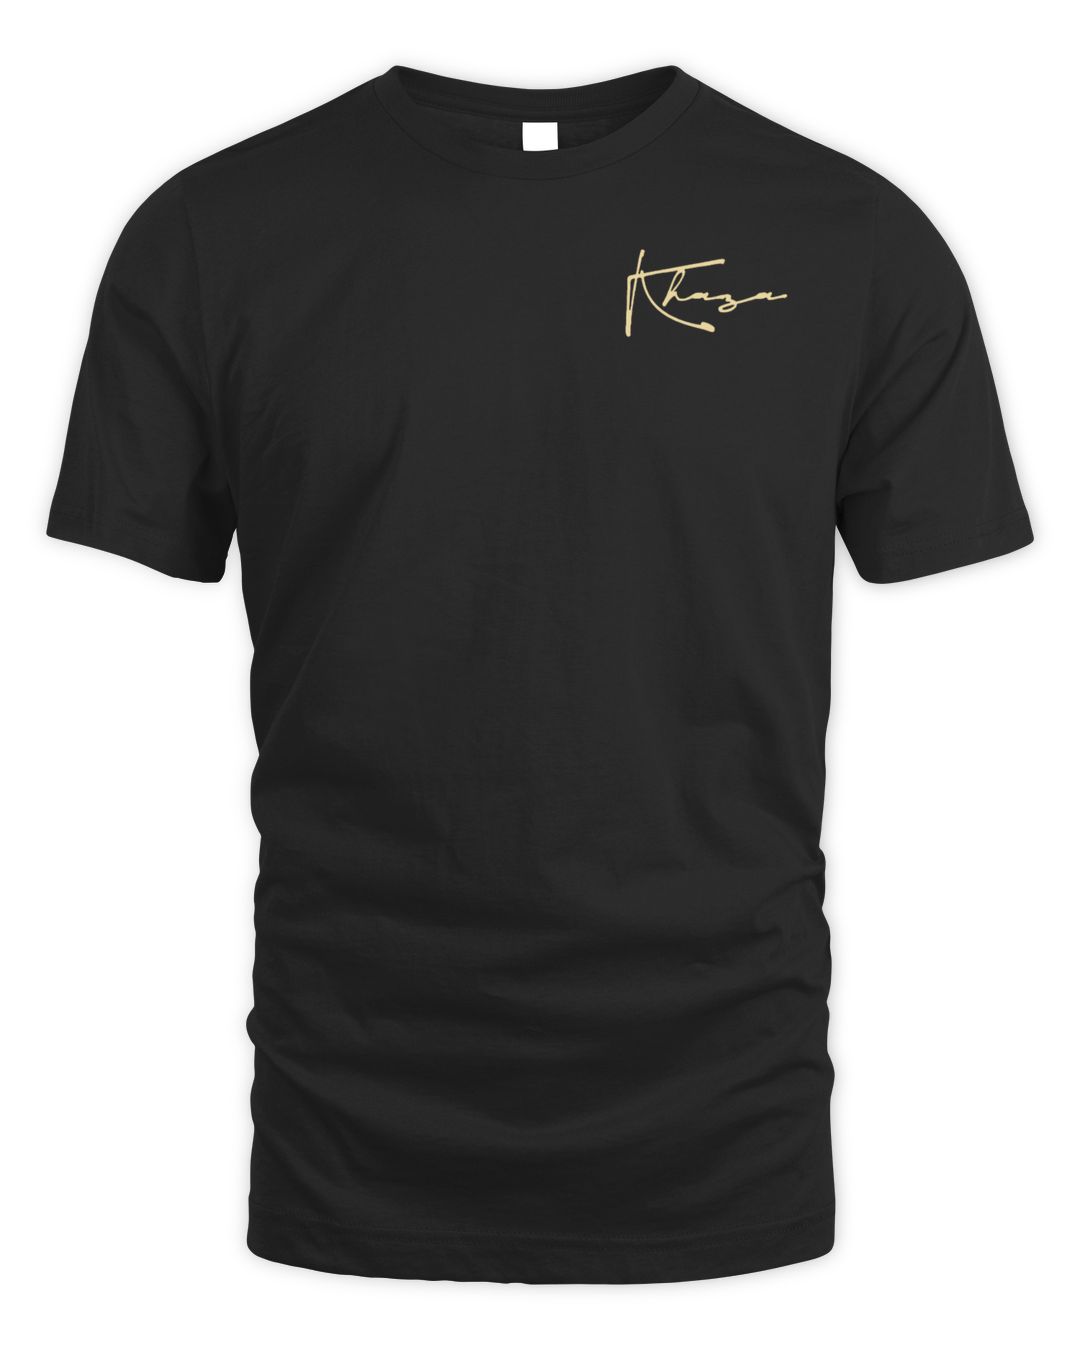 Kevin Gates Merch Admat Tour Shirt | Agencyfrog